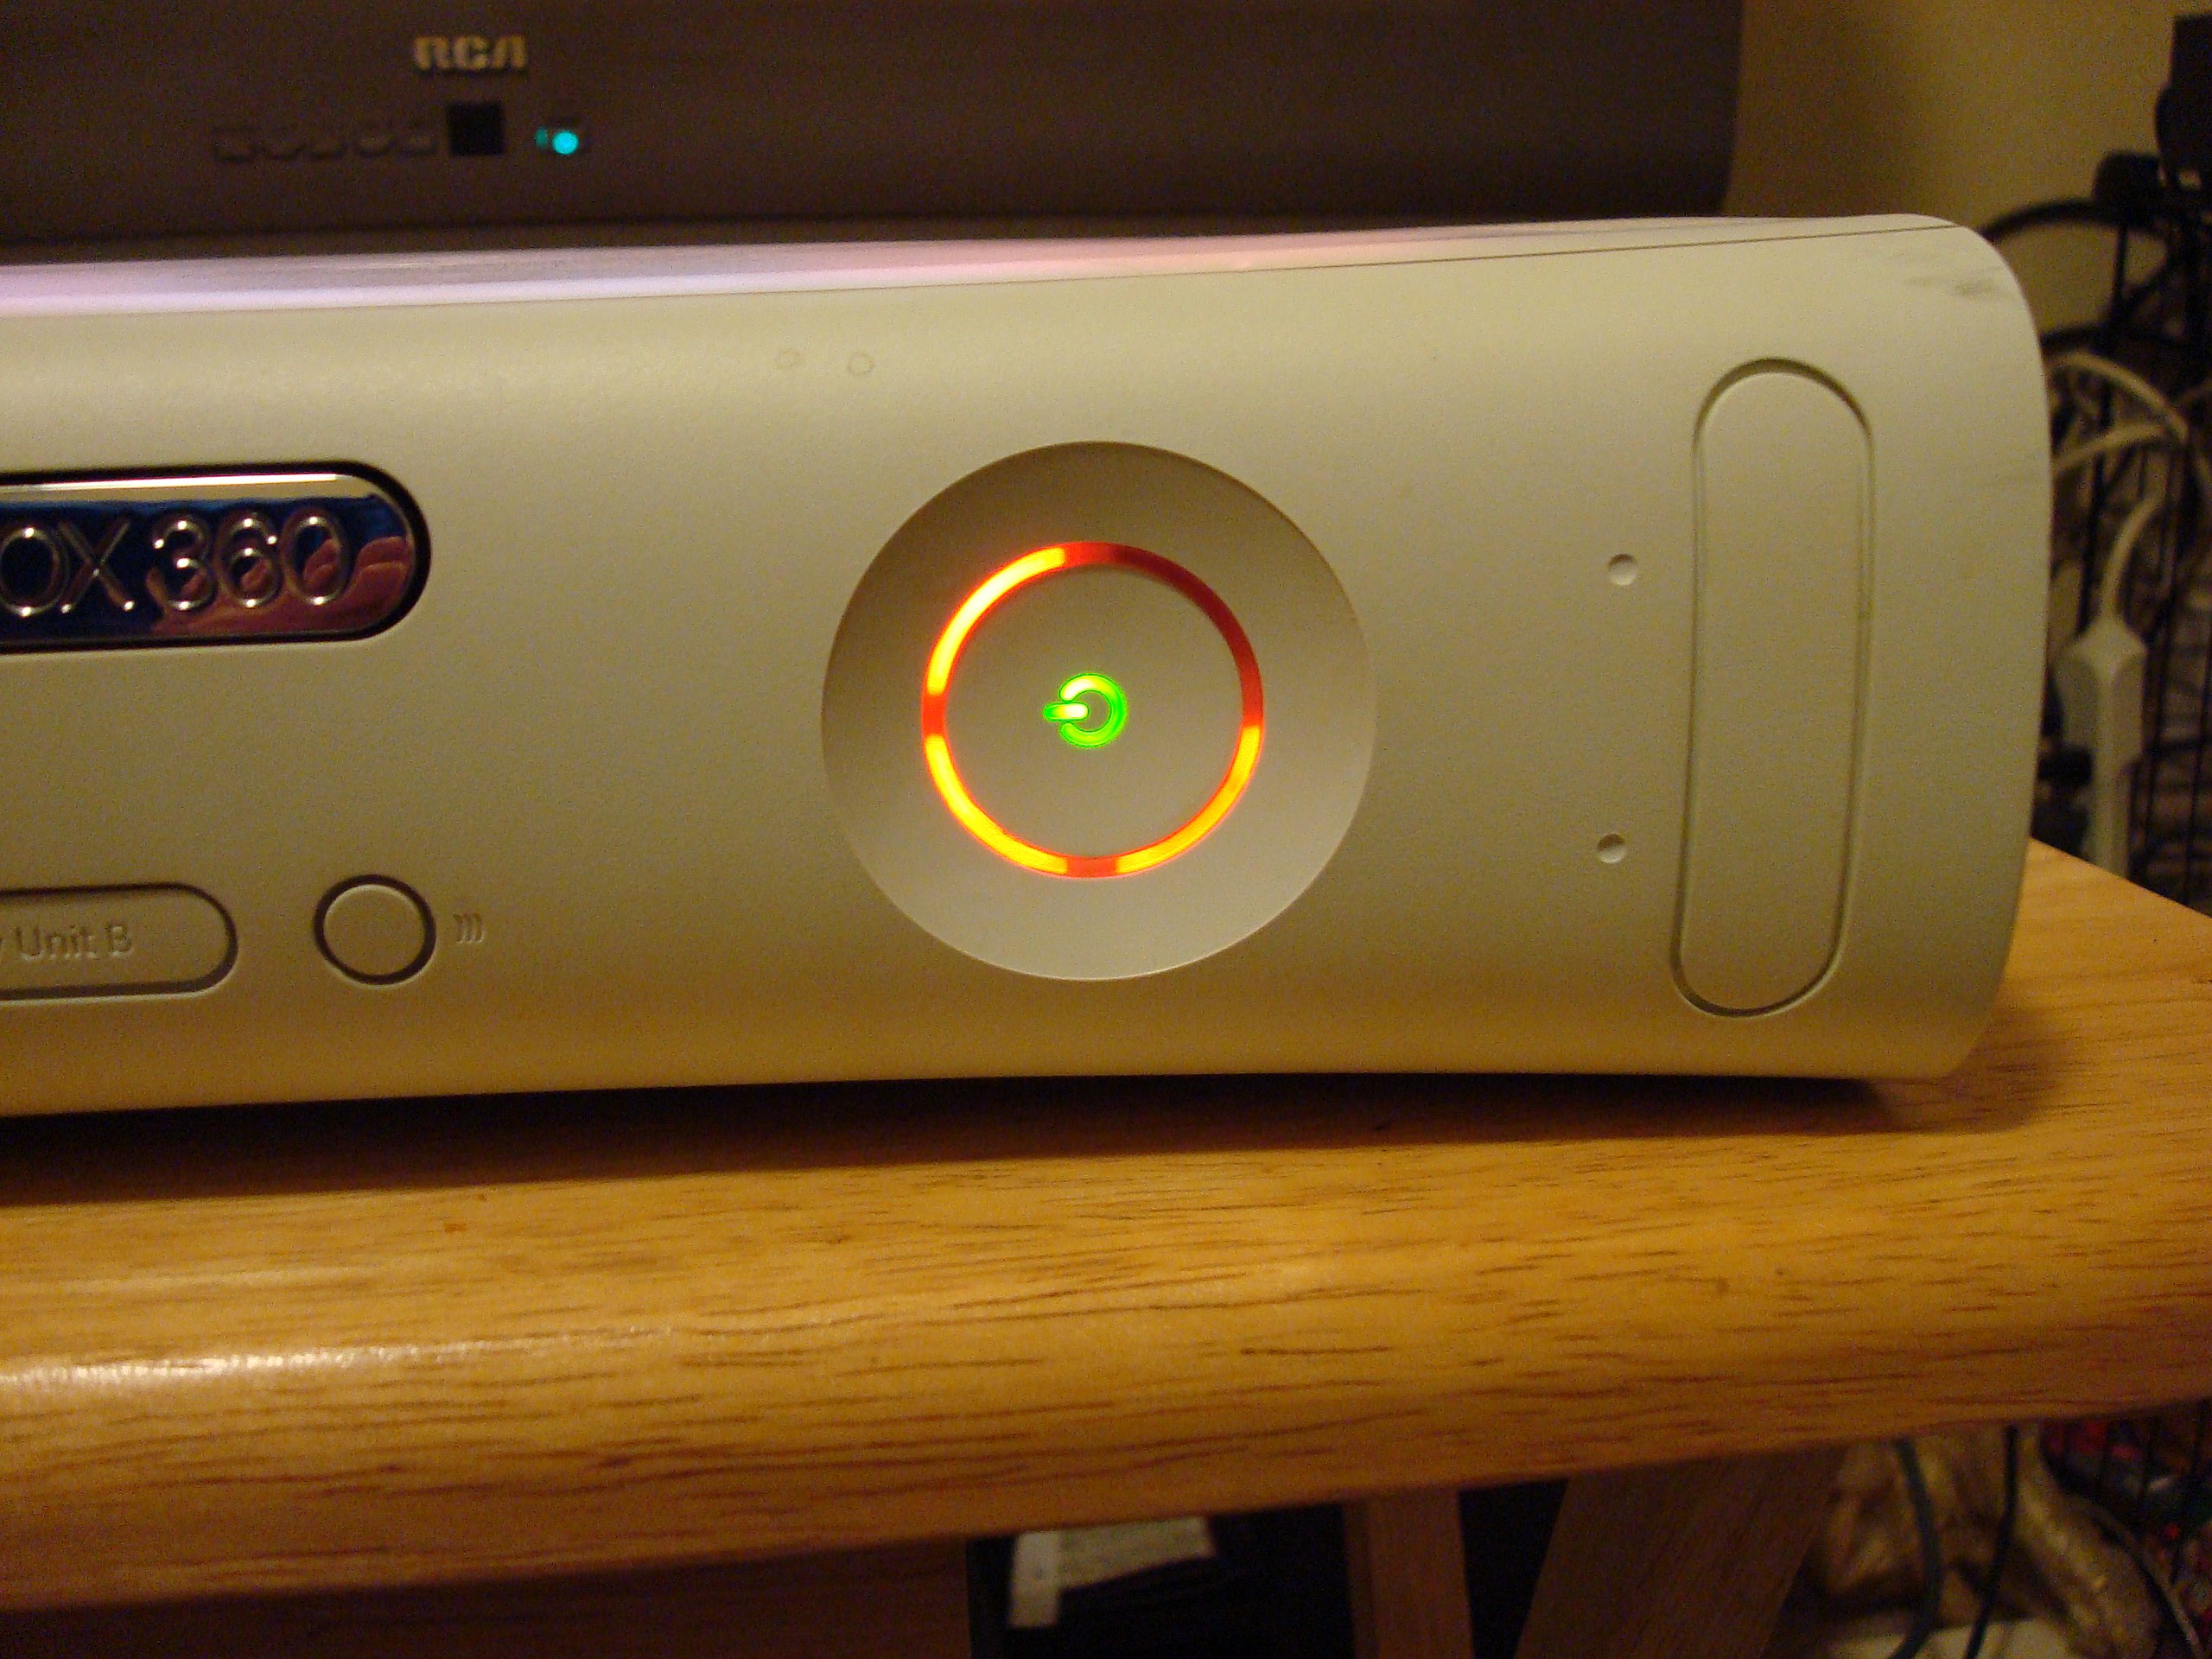 Anh em ngày xưa chơi Xbox 360 có bị "đèn đỏ" không? Đến giờ Microsoft mới hé lộ lý do chính xác